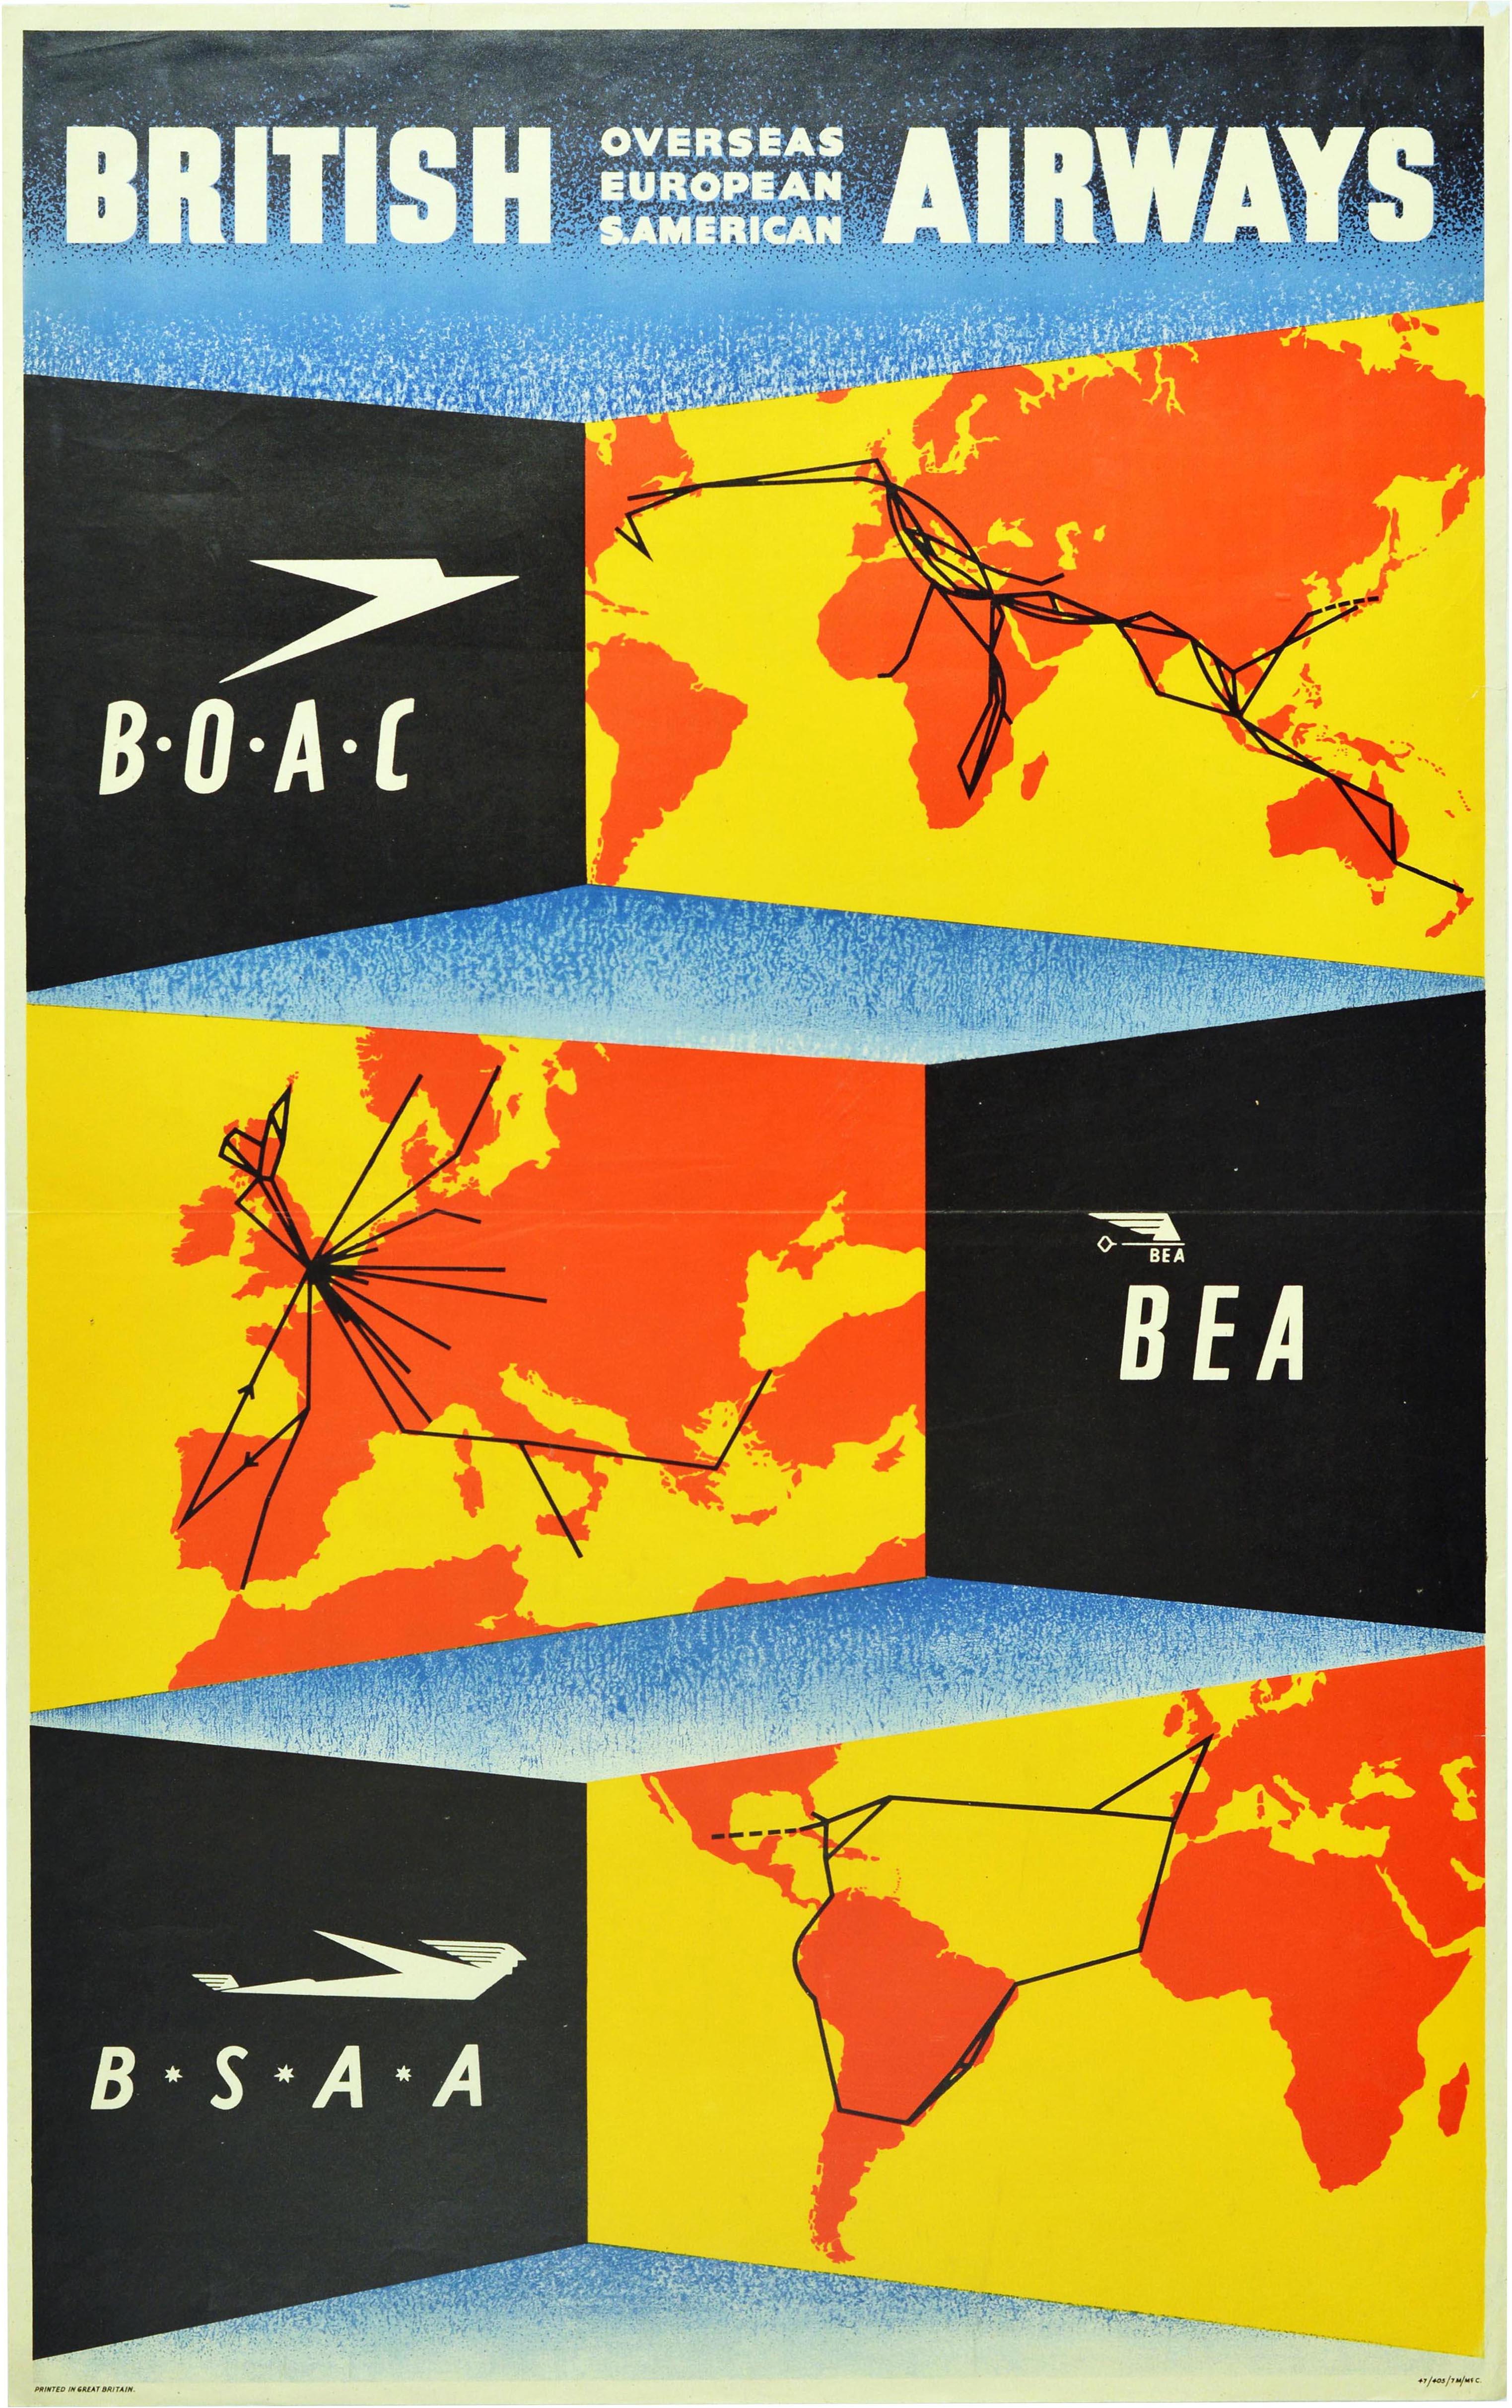 Affiche publicitaire originale d'époque faisant la promotion des compagnies aériennes britanniques - BEA BOAC BSAA British European Overseas S American Airways - présentant un graphisme coloré montrant trois cartes jaunes et orange sur lesquelles